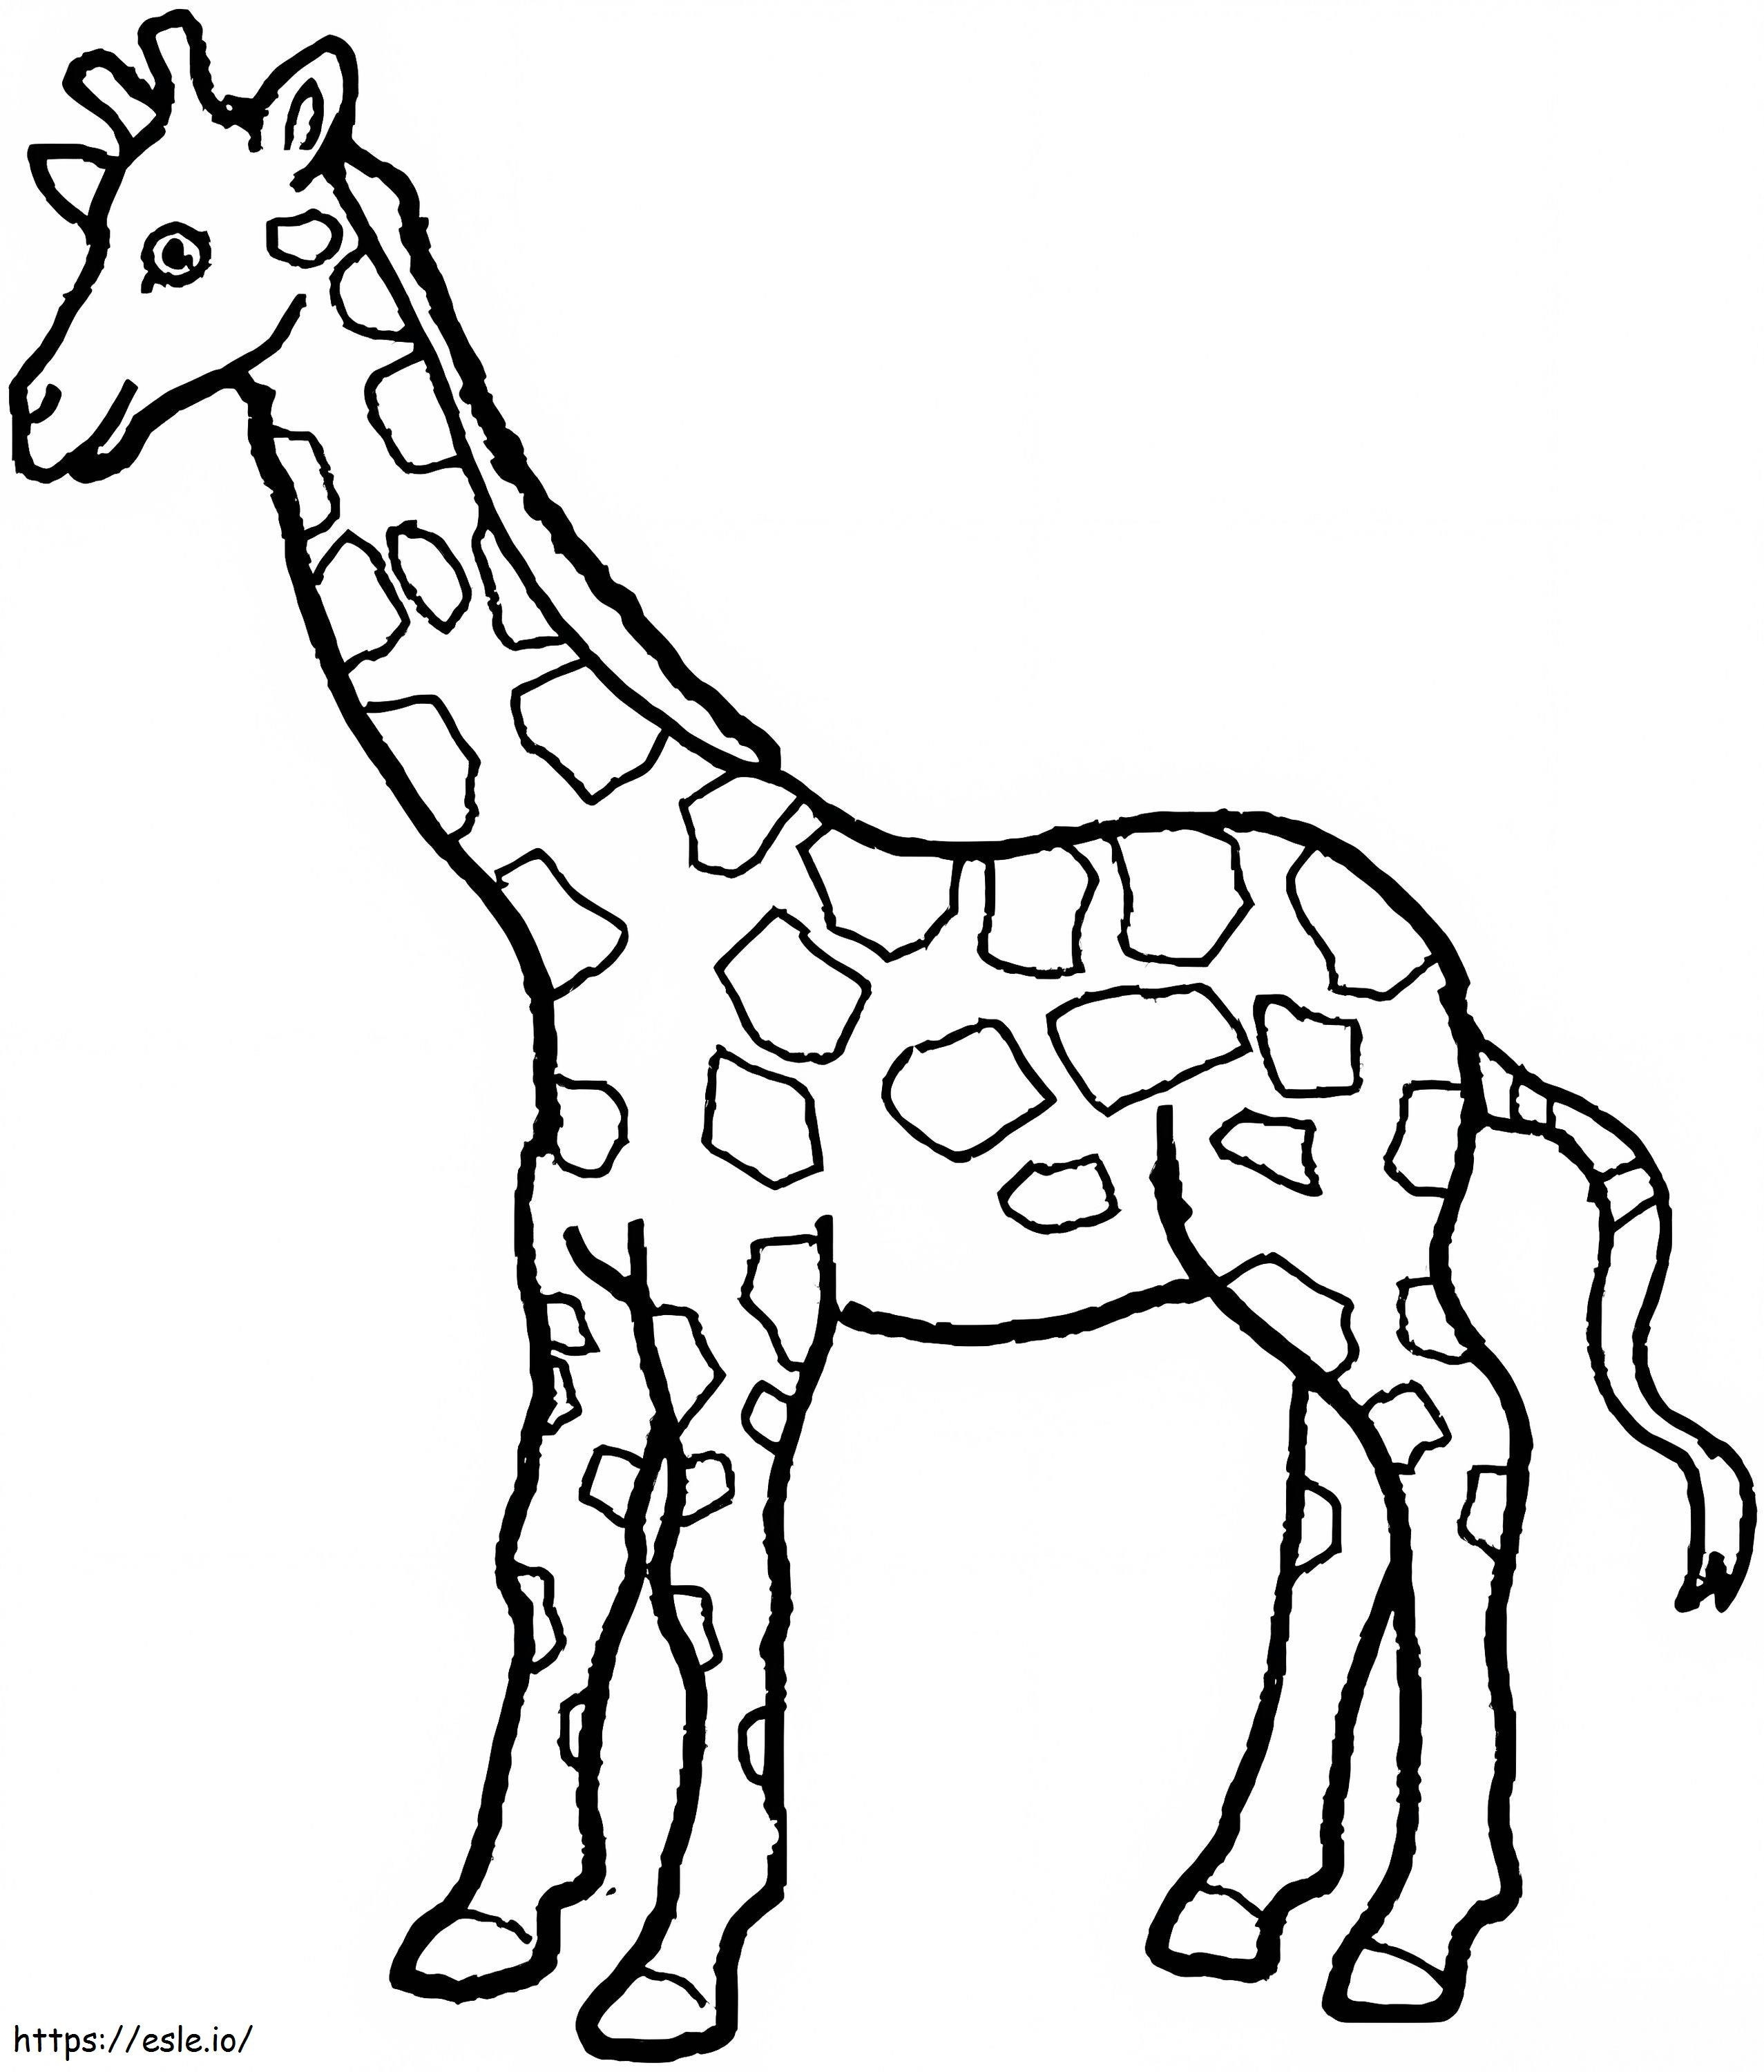 Disegno della giraffa da colorare